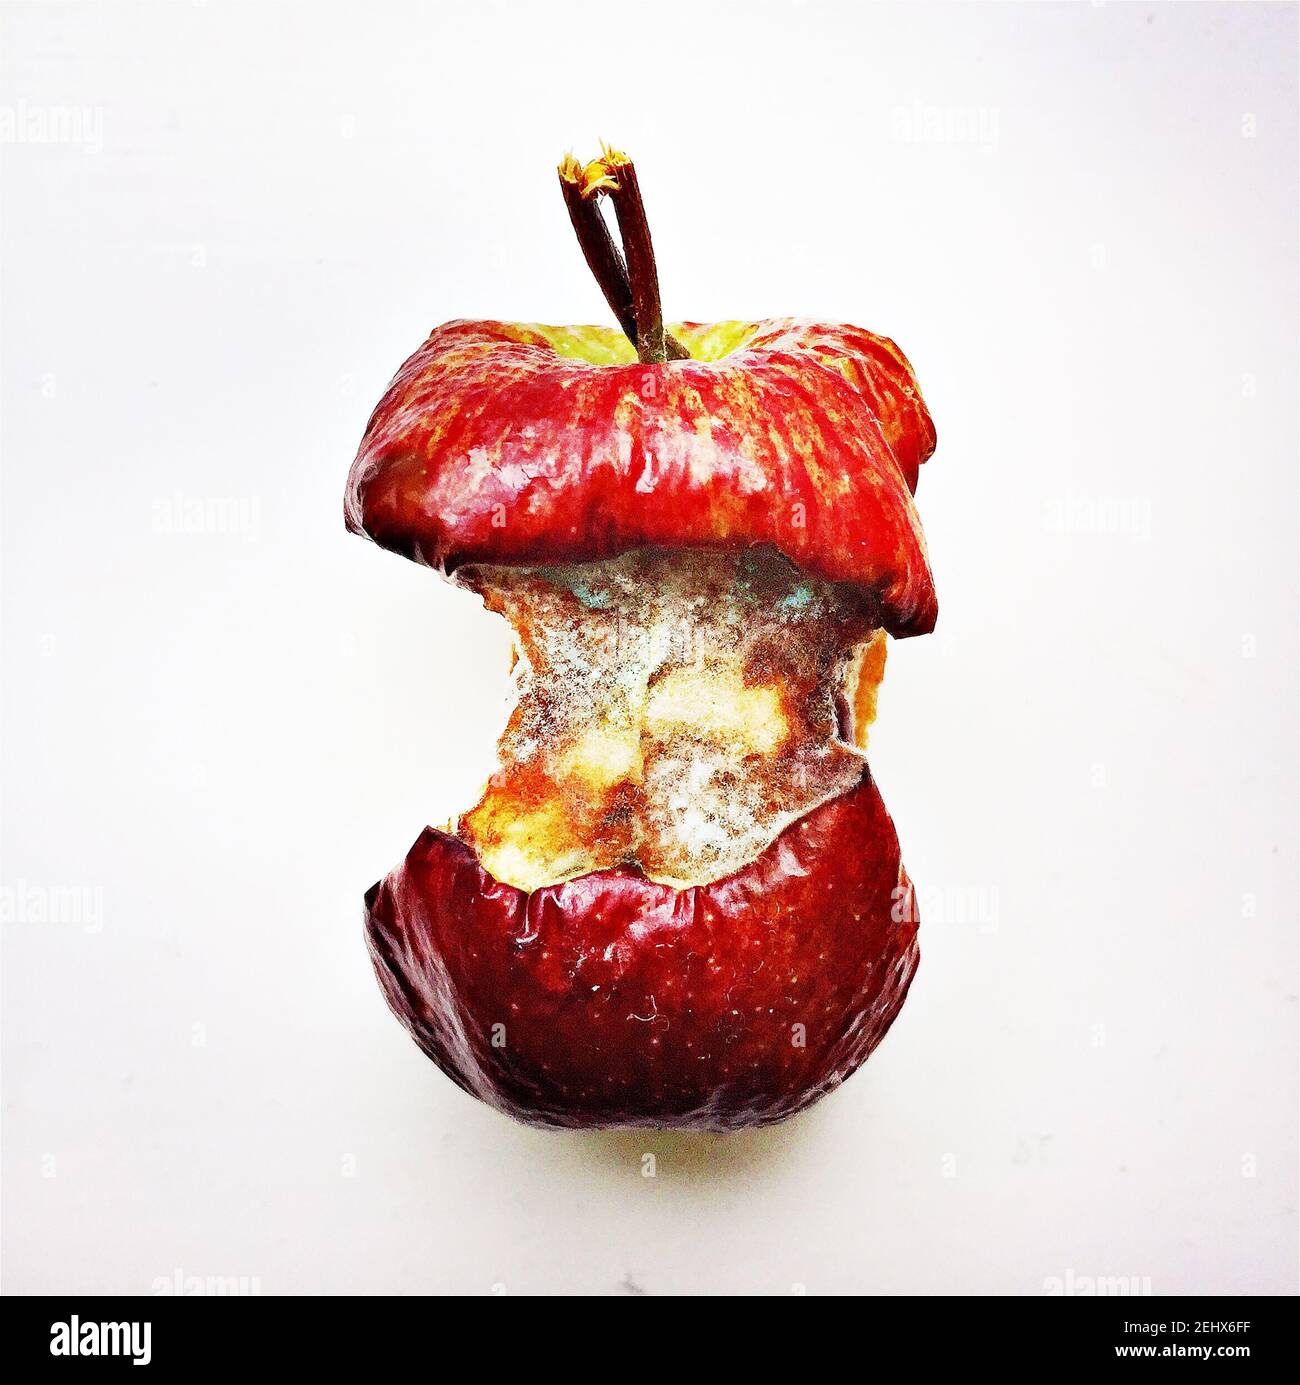 Anima di mela ammuffita con pelle rossa su sfondo bianco Foto Stock